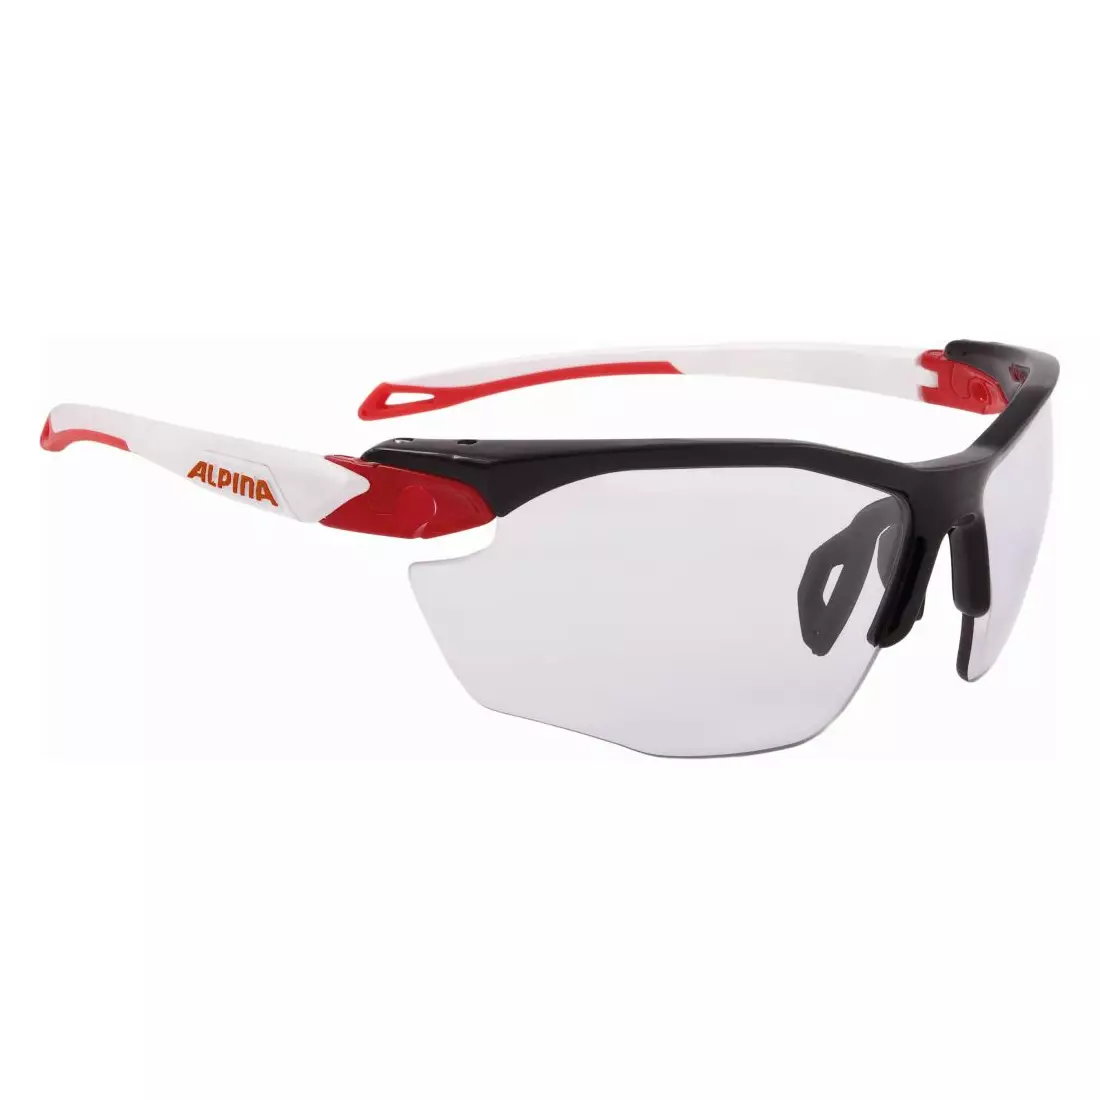 Sportovní cyklistické brýle ALPINA, fotochromatické od S1-S3, mlhovka TWIST FIVE HR VL+